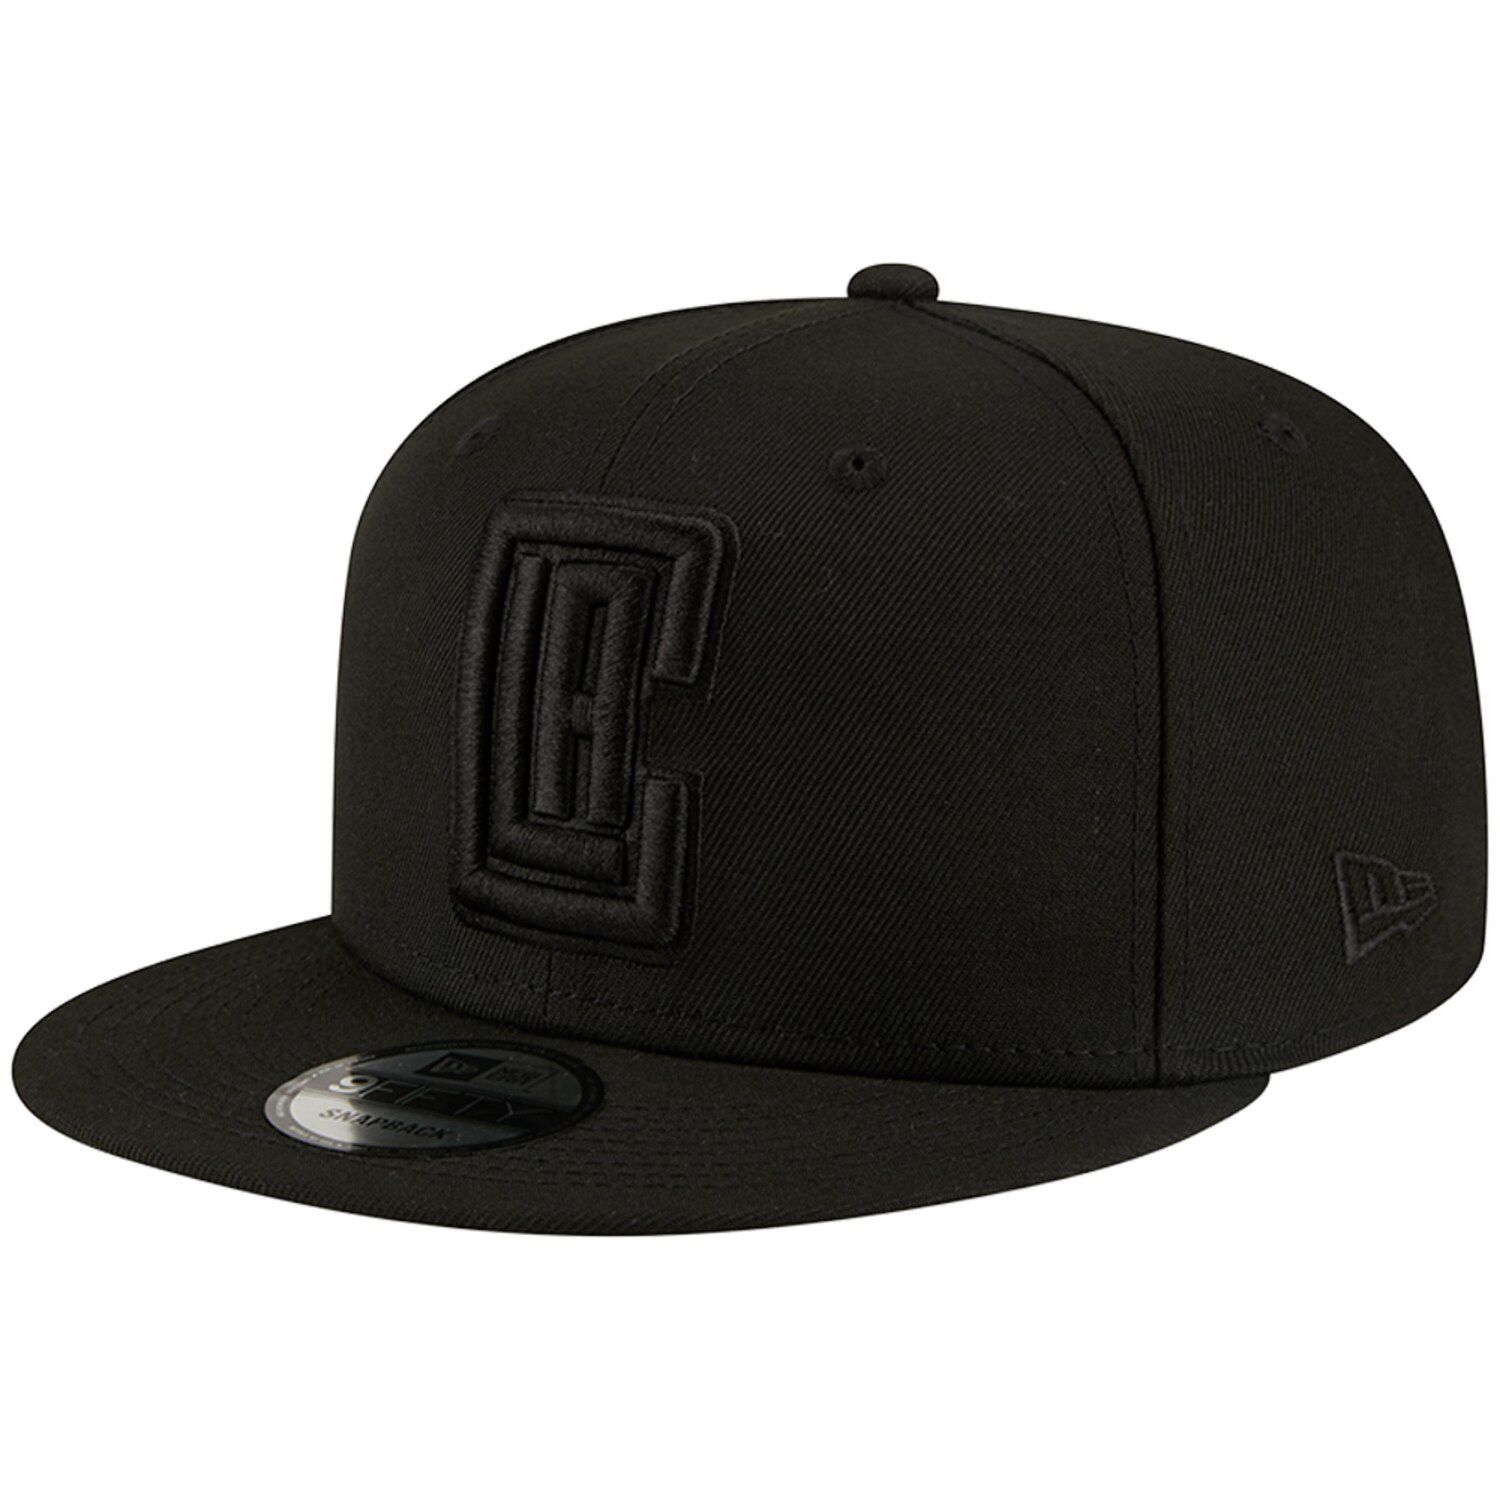 Мужская кепка New Era LA Clippers Black On Black 9FIFTY Snapback